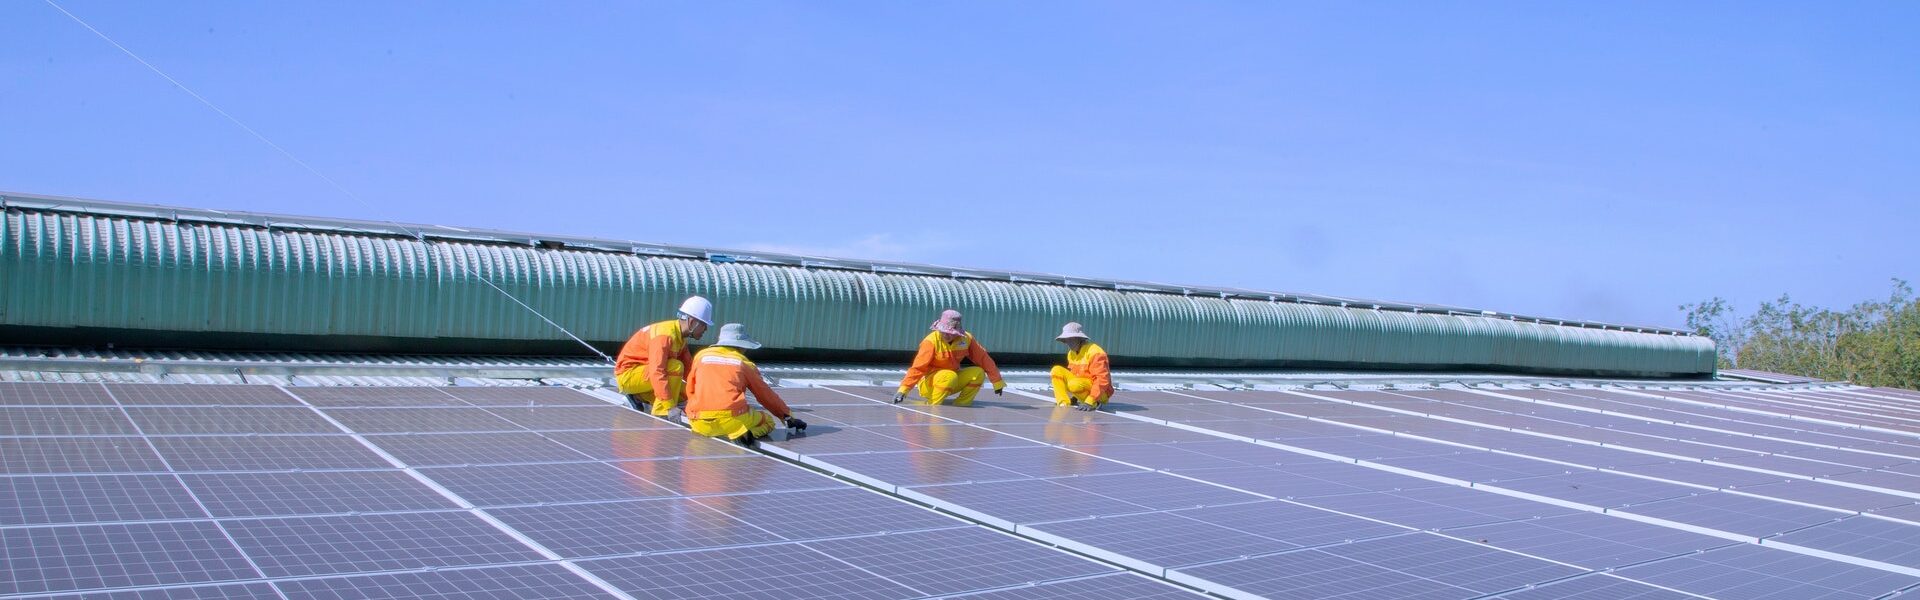 trabalhadores placas solares - Como ficar livre dos aumentos na conta de luz com energia solar?